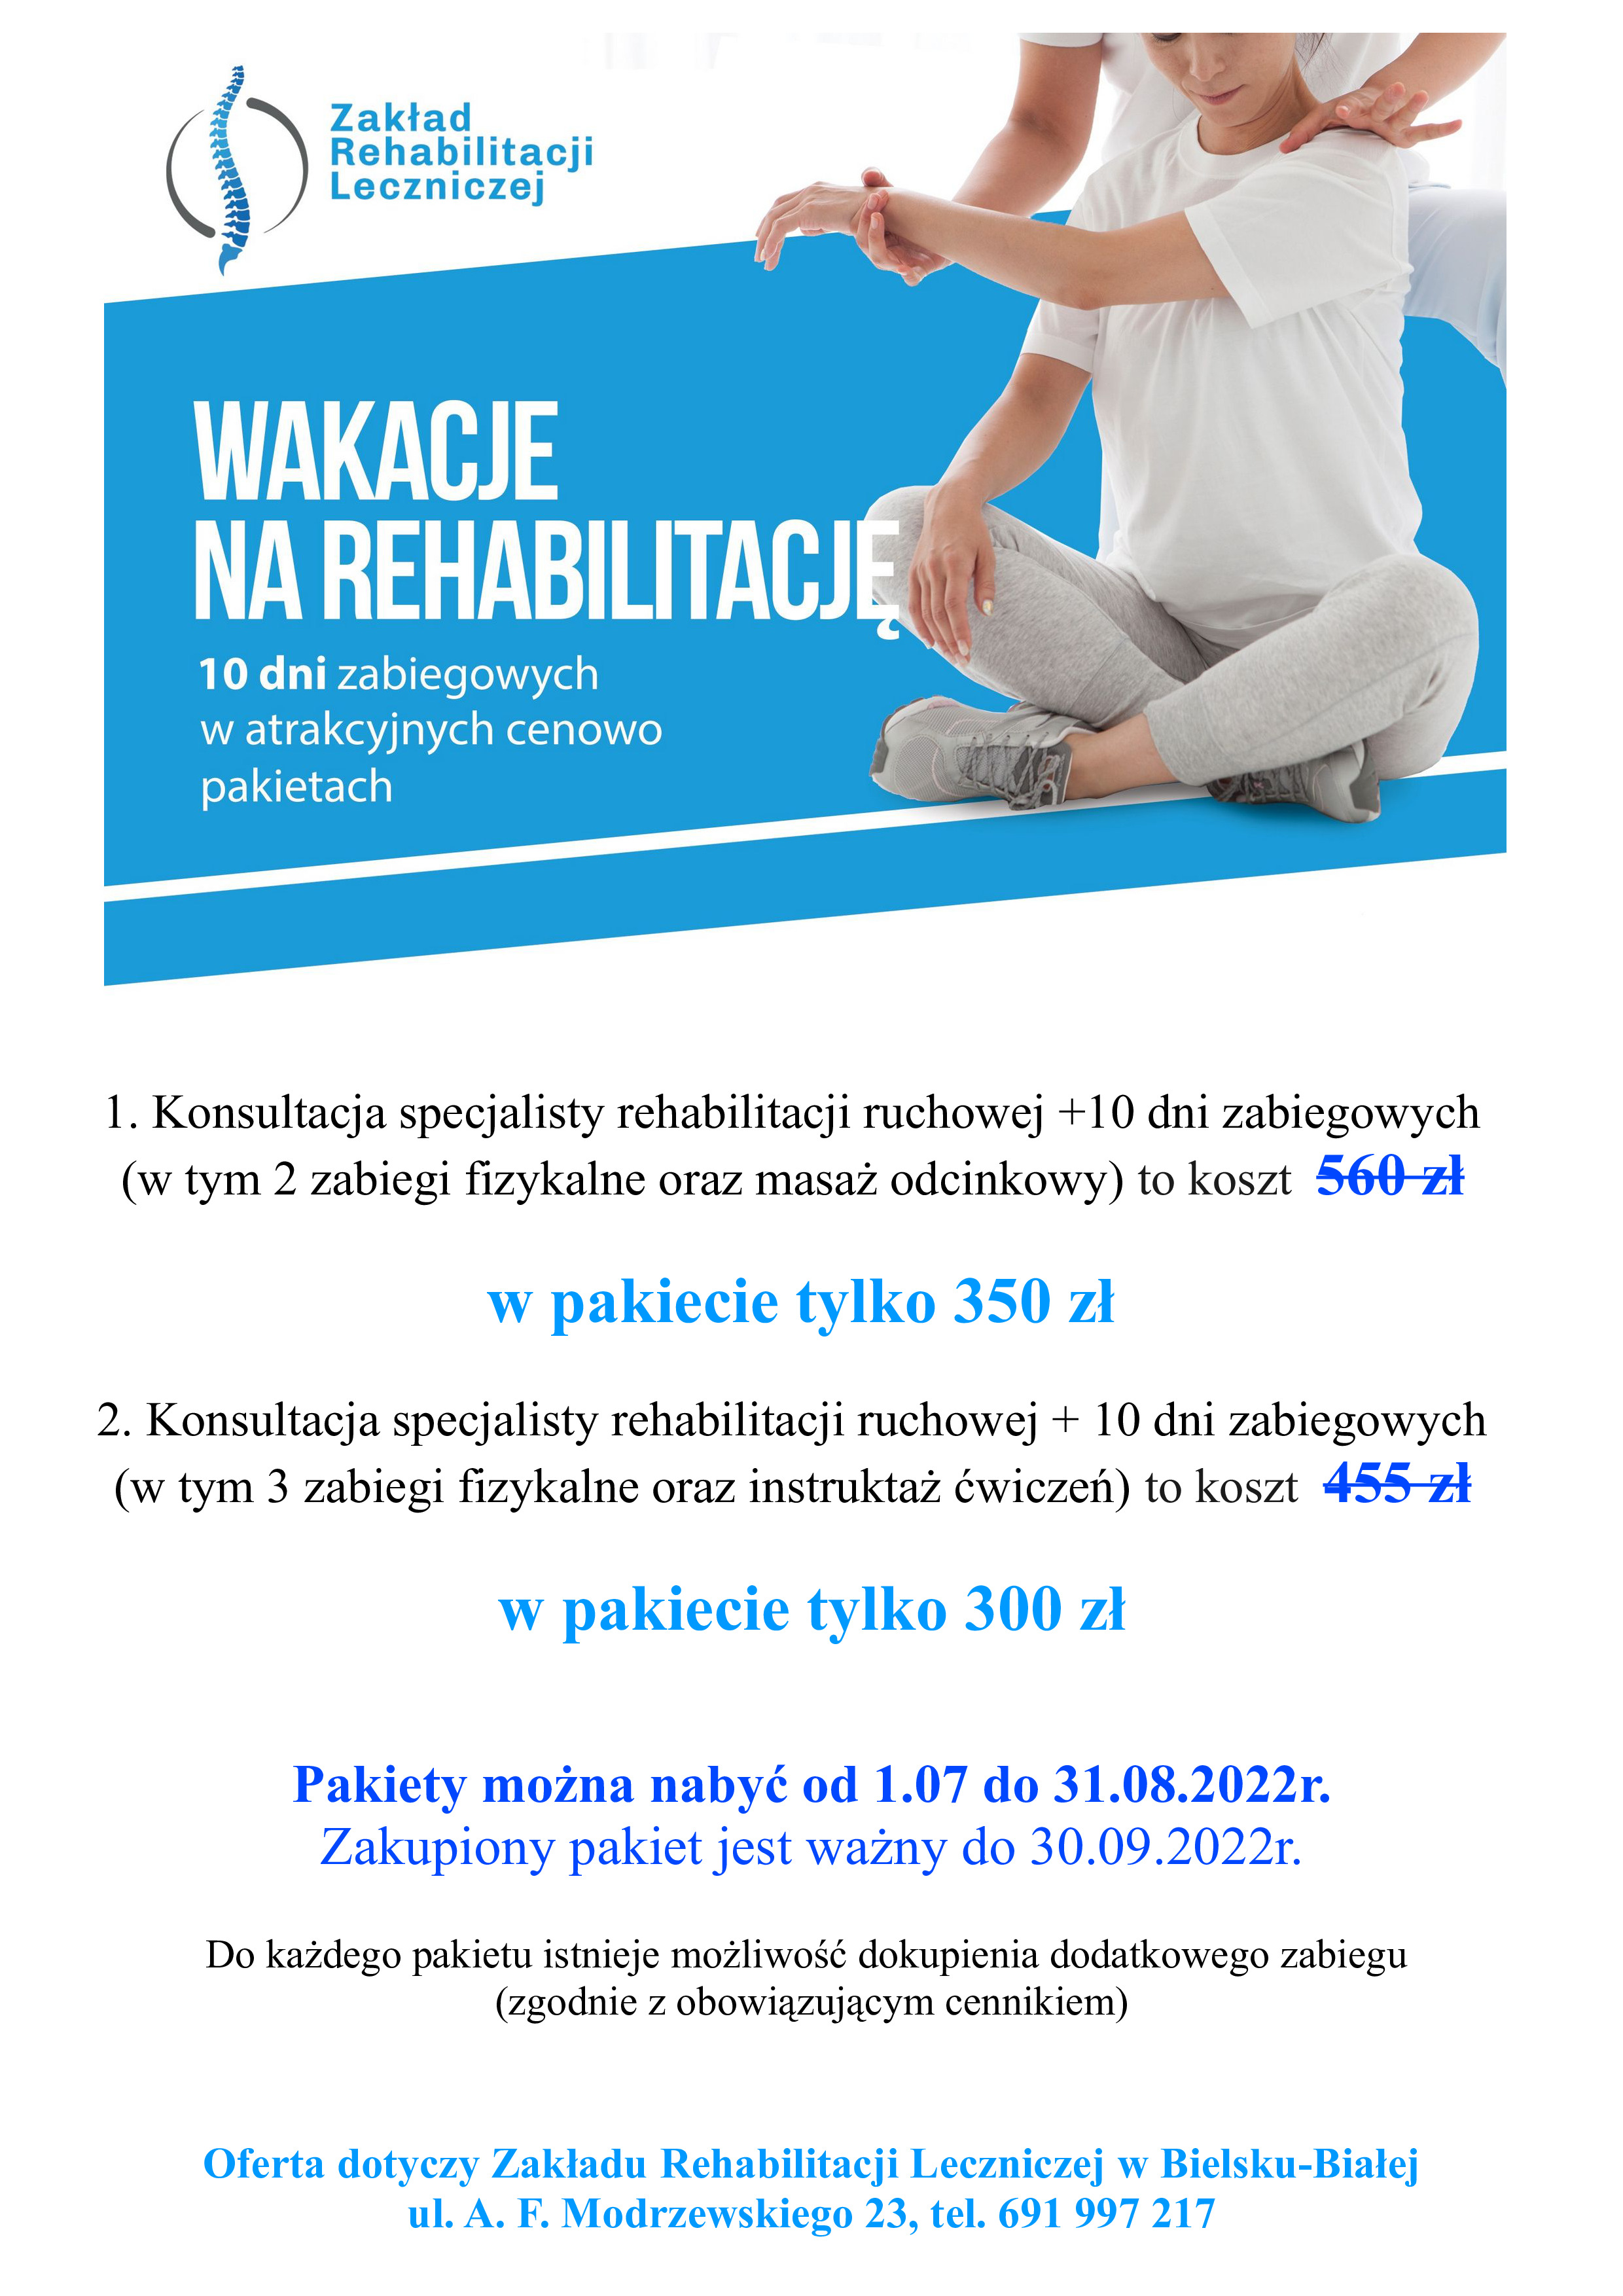 Rehabilitacja Bielsko-Biała